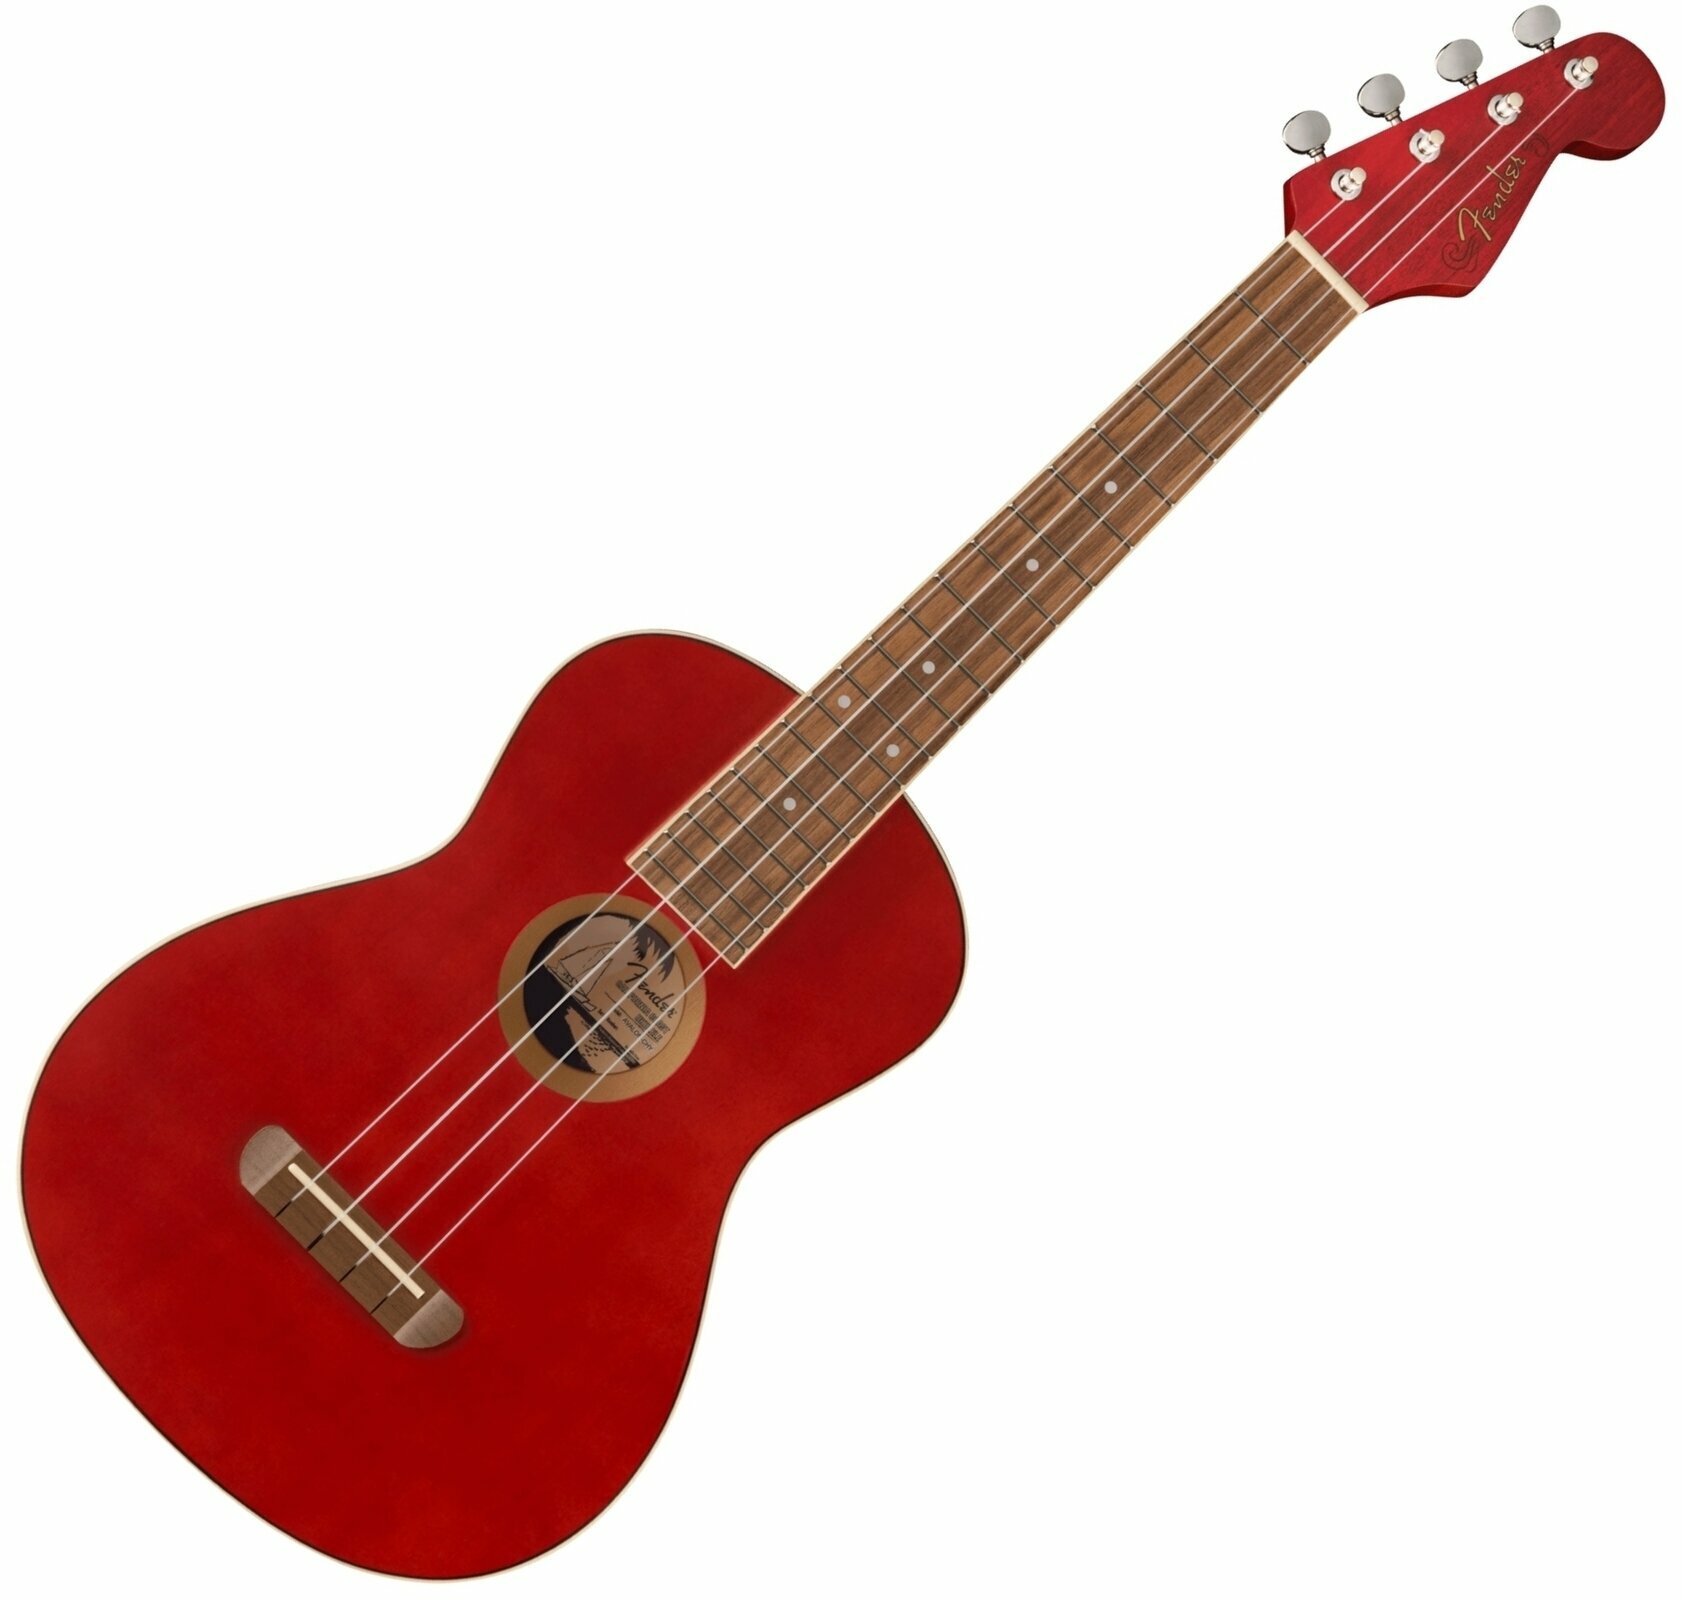 Tenor-ukuleler Fender Avalon Tenor Ukulele WN Tenor-ukuleler Cherry